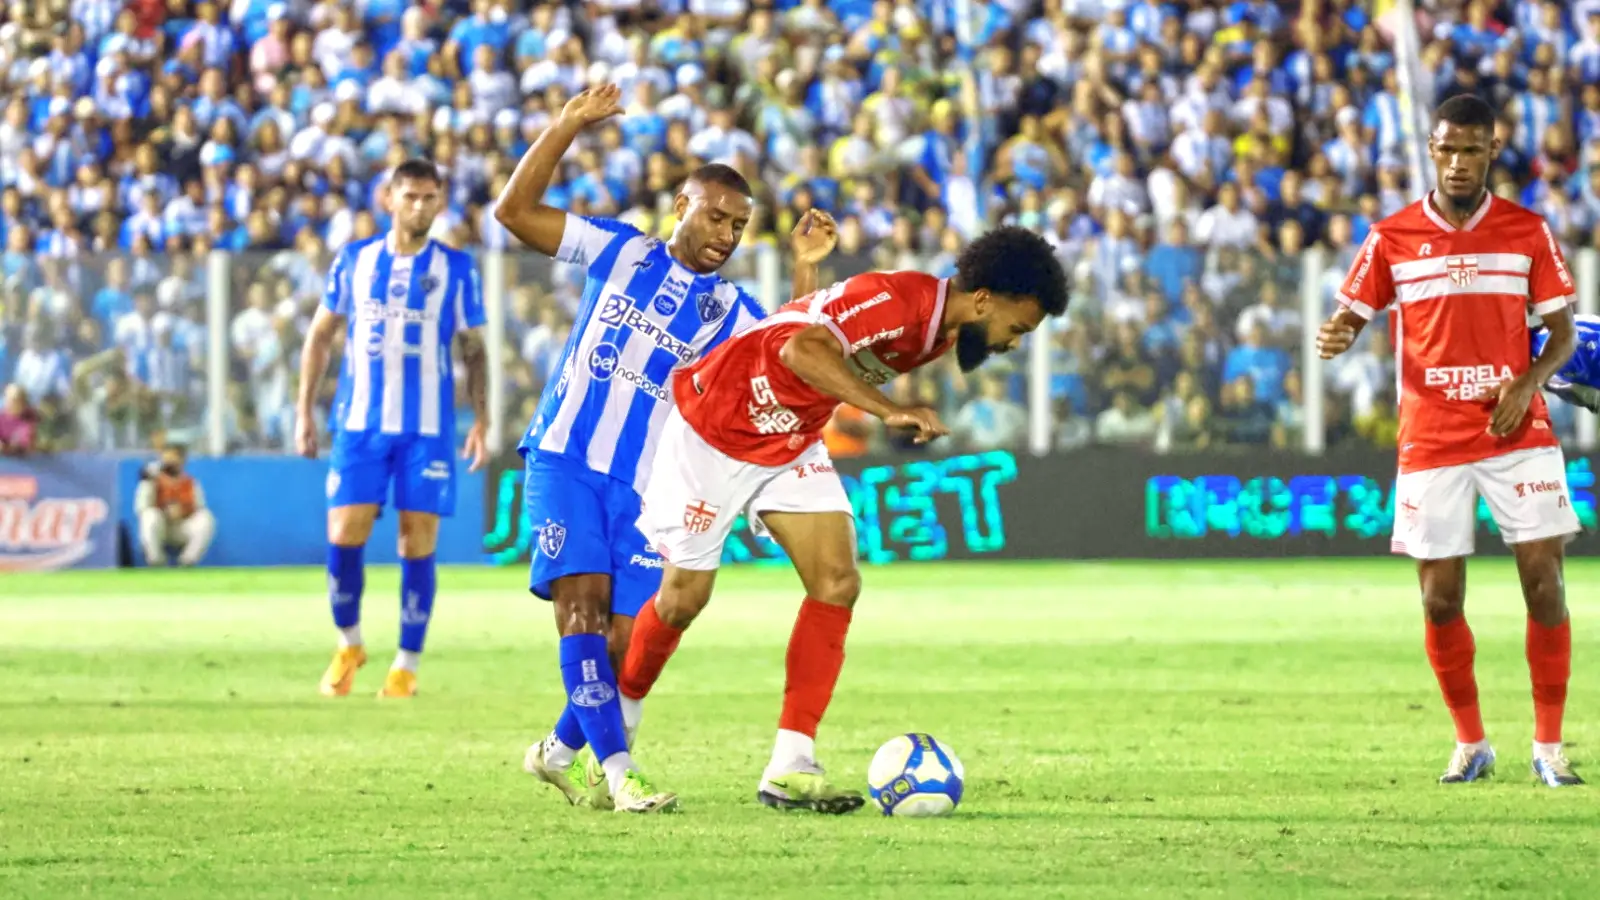 O Paysandu ficou no 1 a 1 com o CRB, na noite desta terça-feira (18), no Estádio da Curuzu, em Belém, pela 11ª rodada da Série B do Campeonato Brasileiro. João Vieira e Léo Pereira marcaram os gols do jogo.